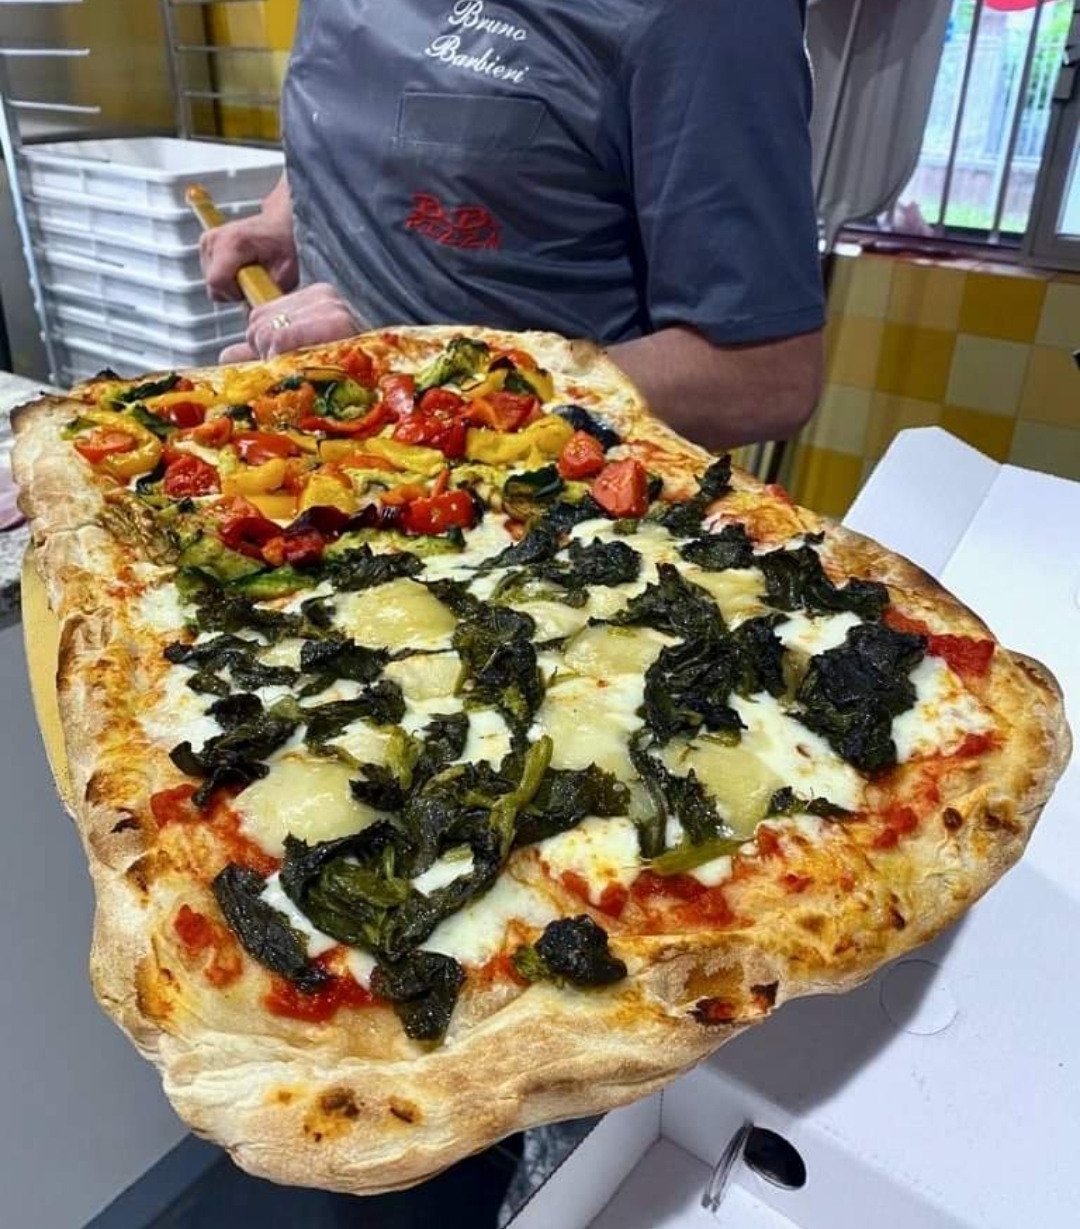 Grandioso a Crema, capitale del Granducato del Tortello: BB Pizza lancia la pizza al Salva Cremasco Dop e Friarelli. Che abbinamento col Rosato Cantina Caleffi